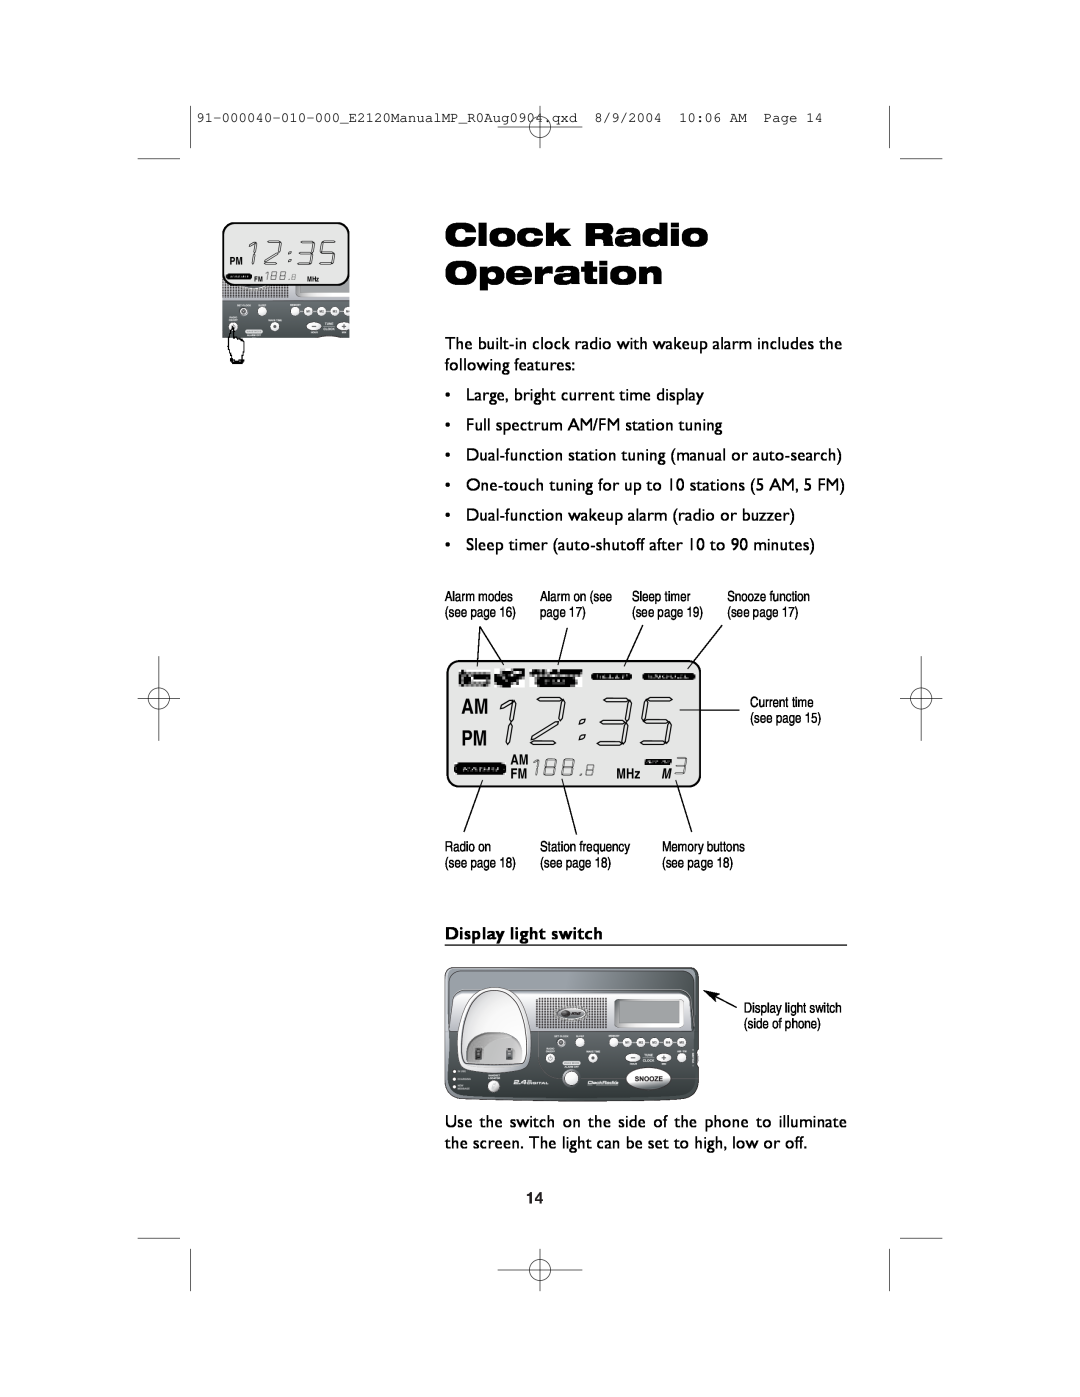 AT&T ATT-E2120 user manual Clock Radio Operation 